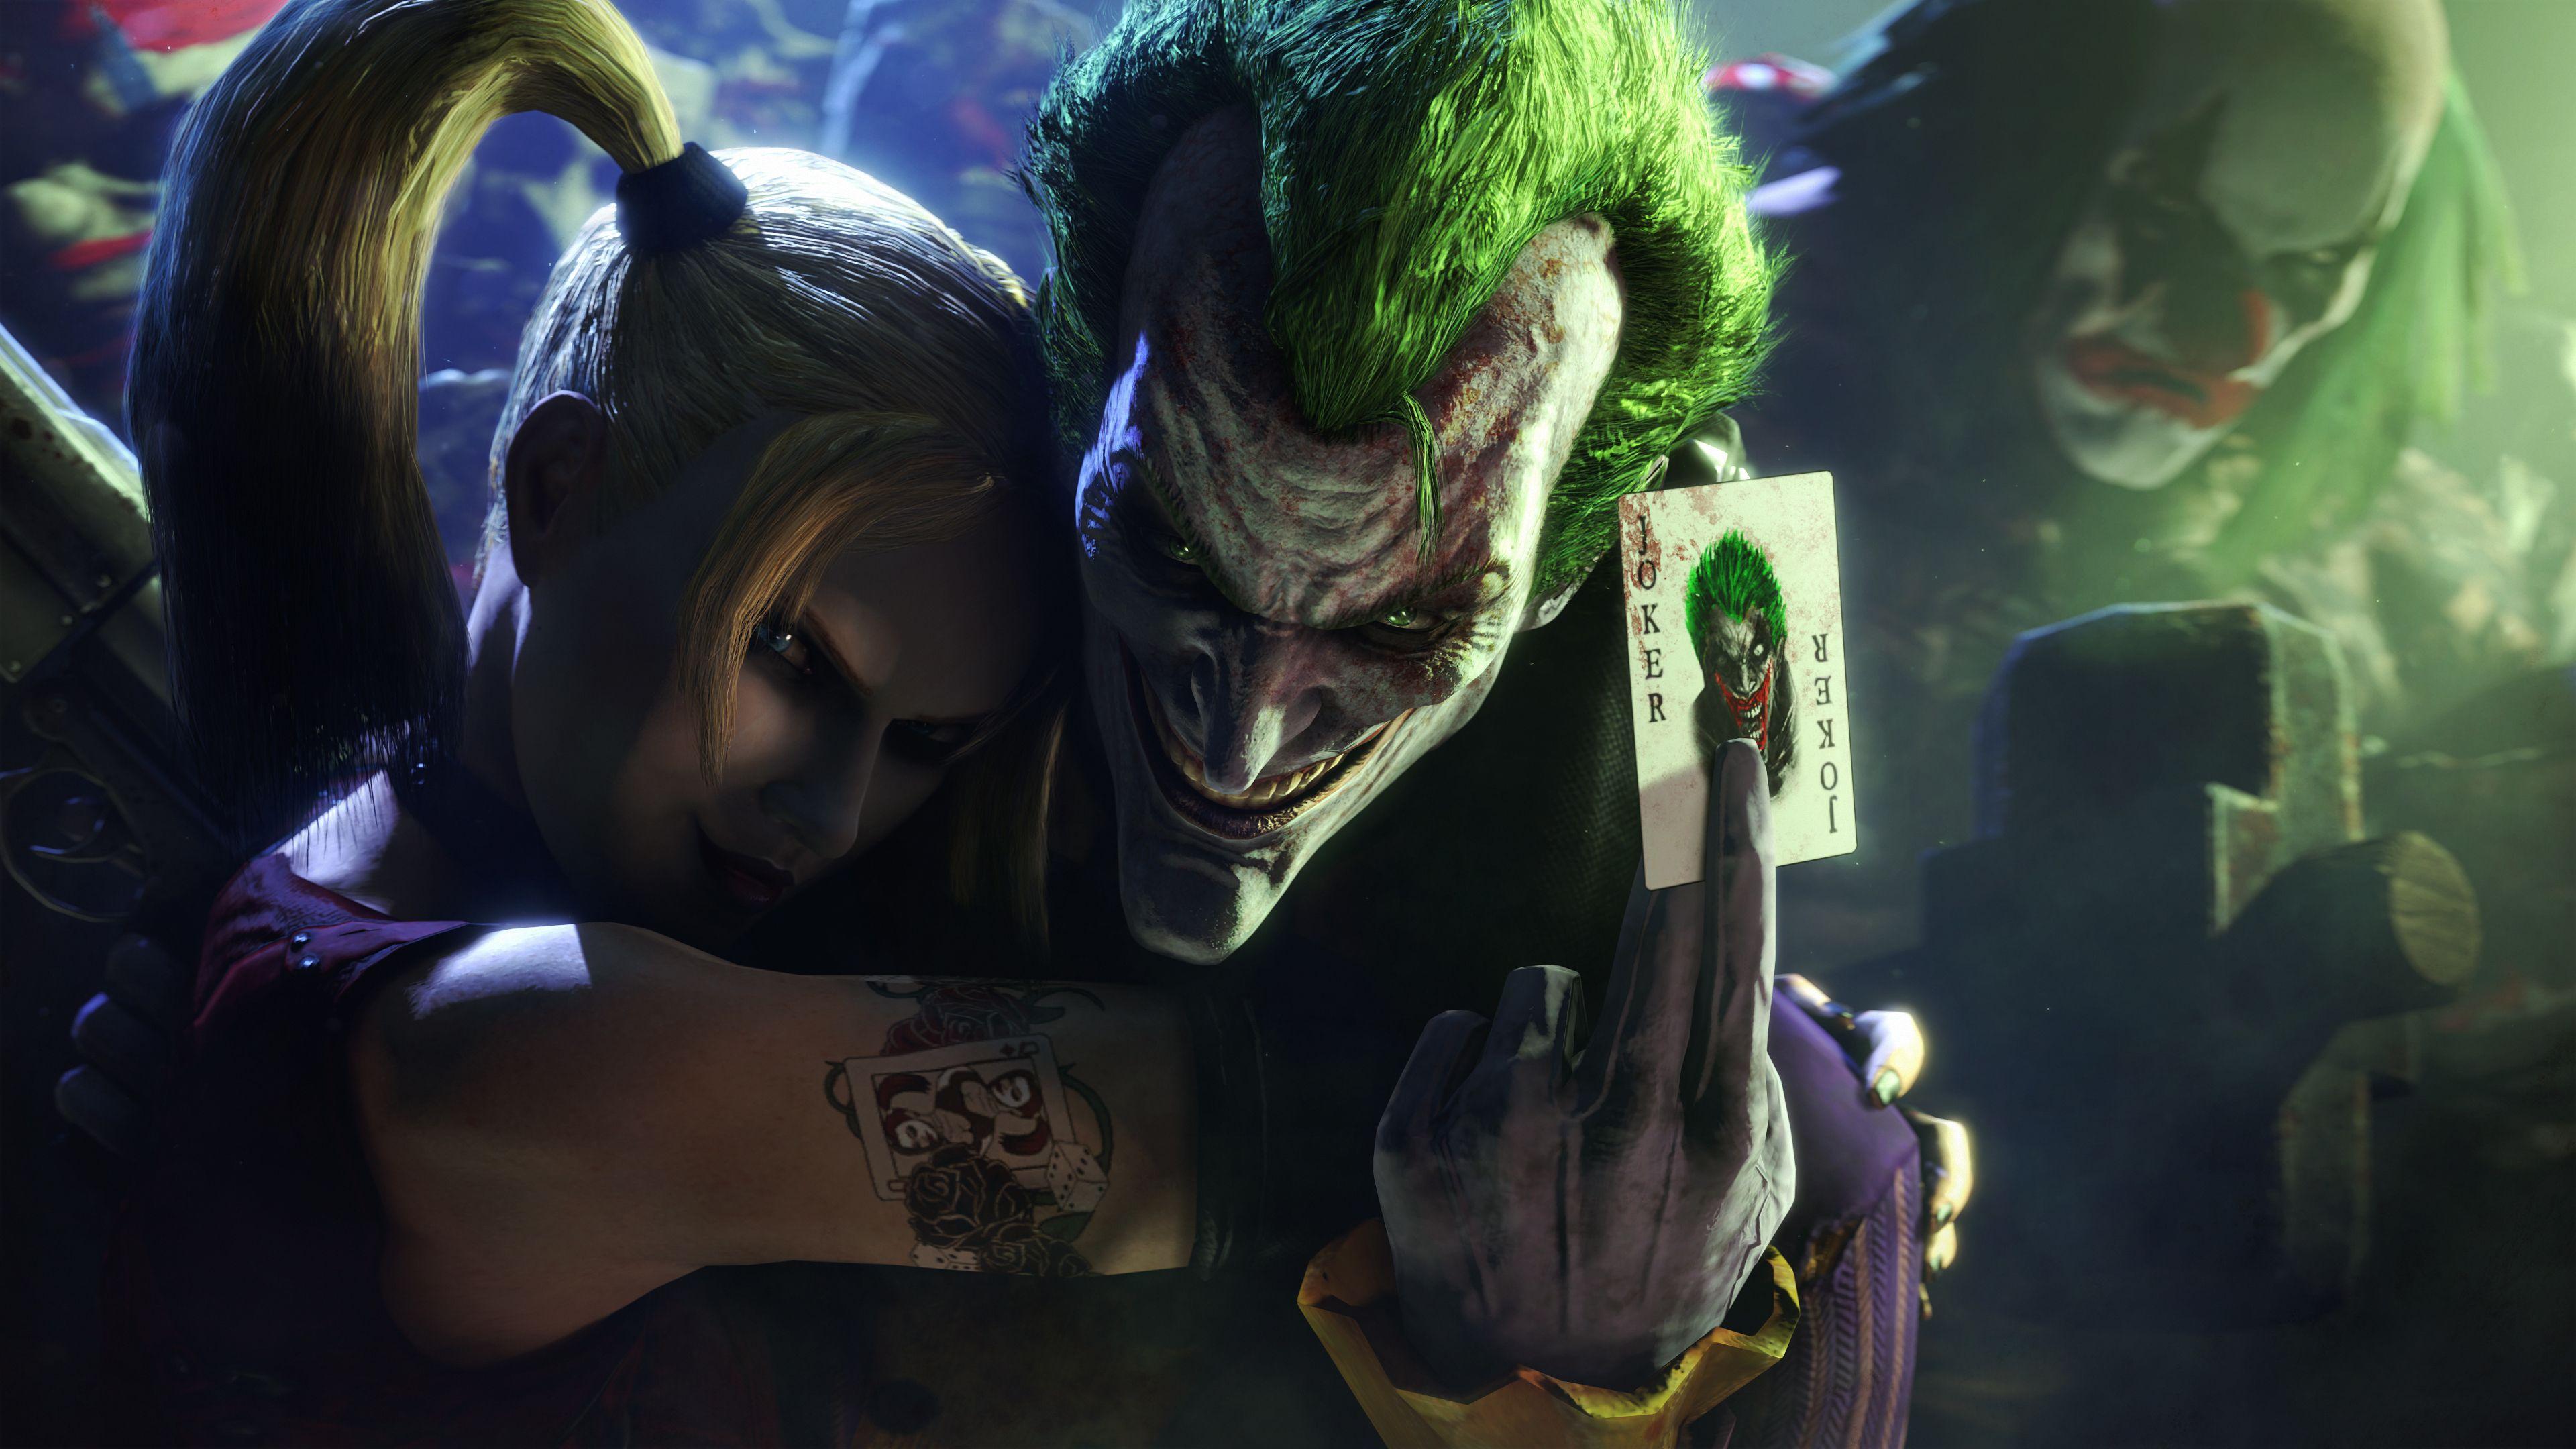 Arkham city, Joker, Harley quinn Wallpaper, Background 4K Ultra HD